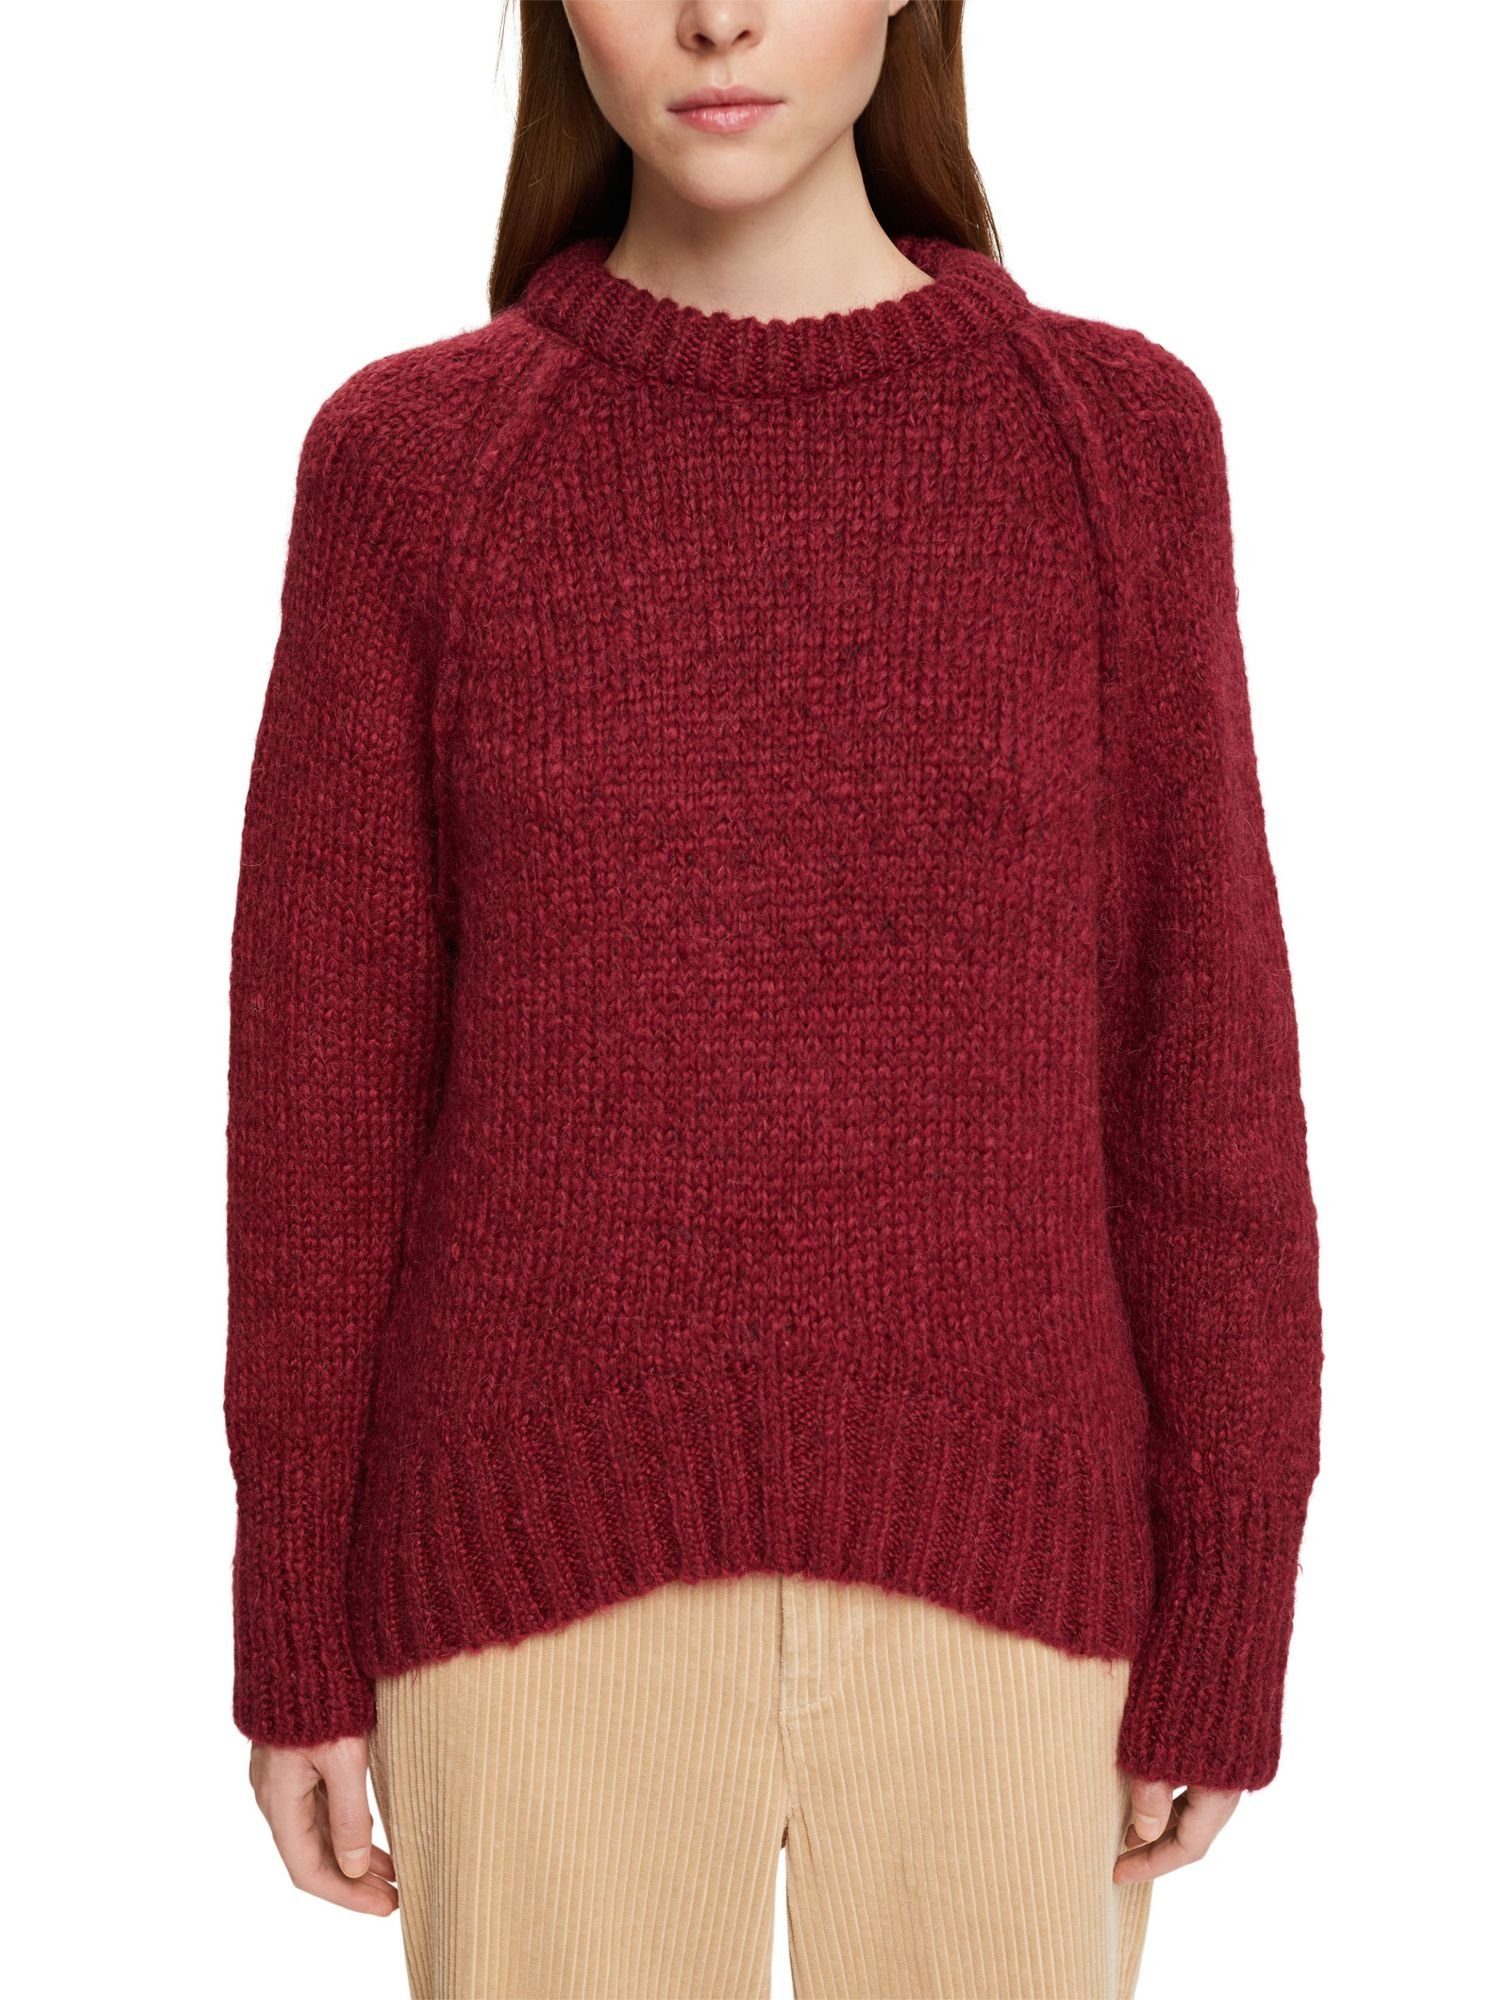 RED Strickpullover Wollgemisch CHERRY Pullover aus Esprit